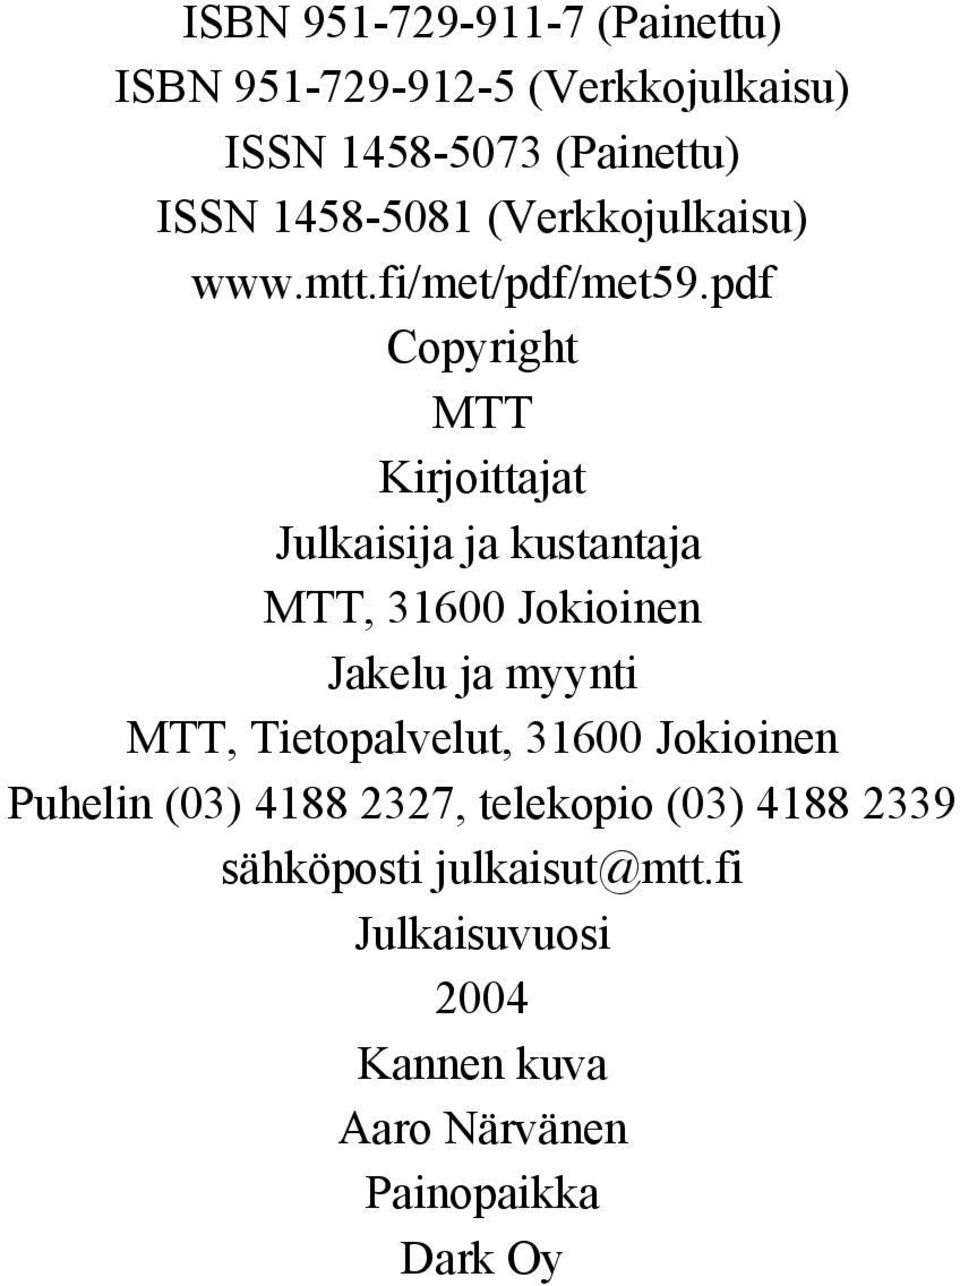 pdf Copyright MTT Kirjoittajat Julkaisija ja kustantaja MTT, 316 Jokioinen Jakelu ja myynti MTT,